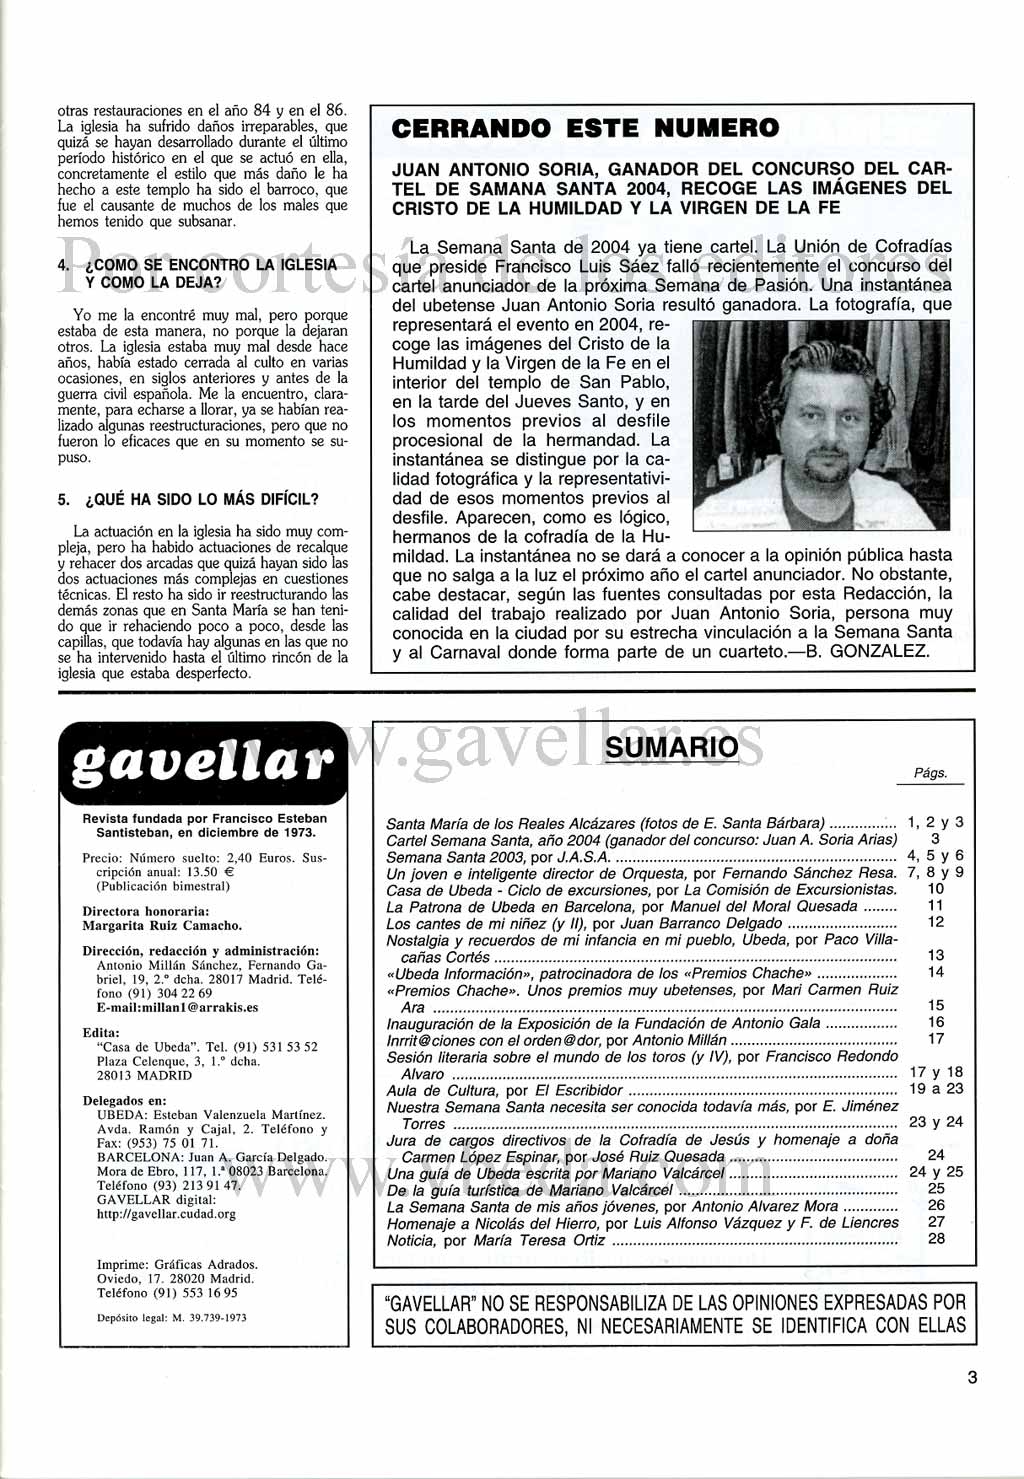 Revista Gavellar. Año XXX, nº 299-300. Mayo, junio y julio de 2003